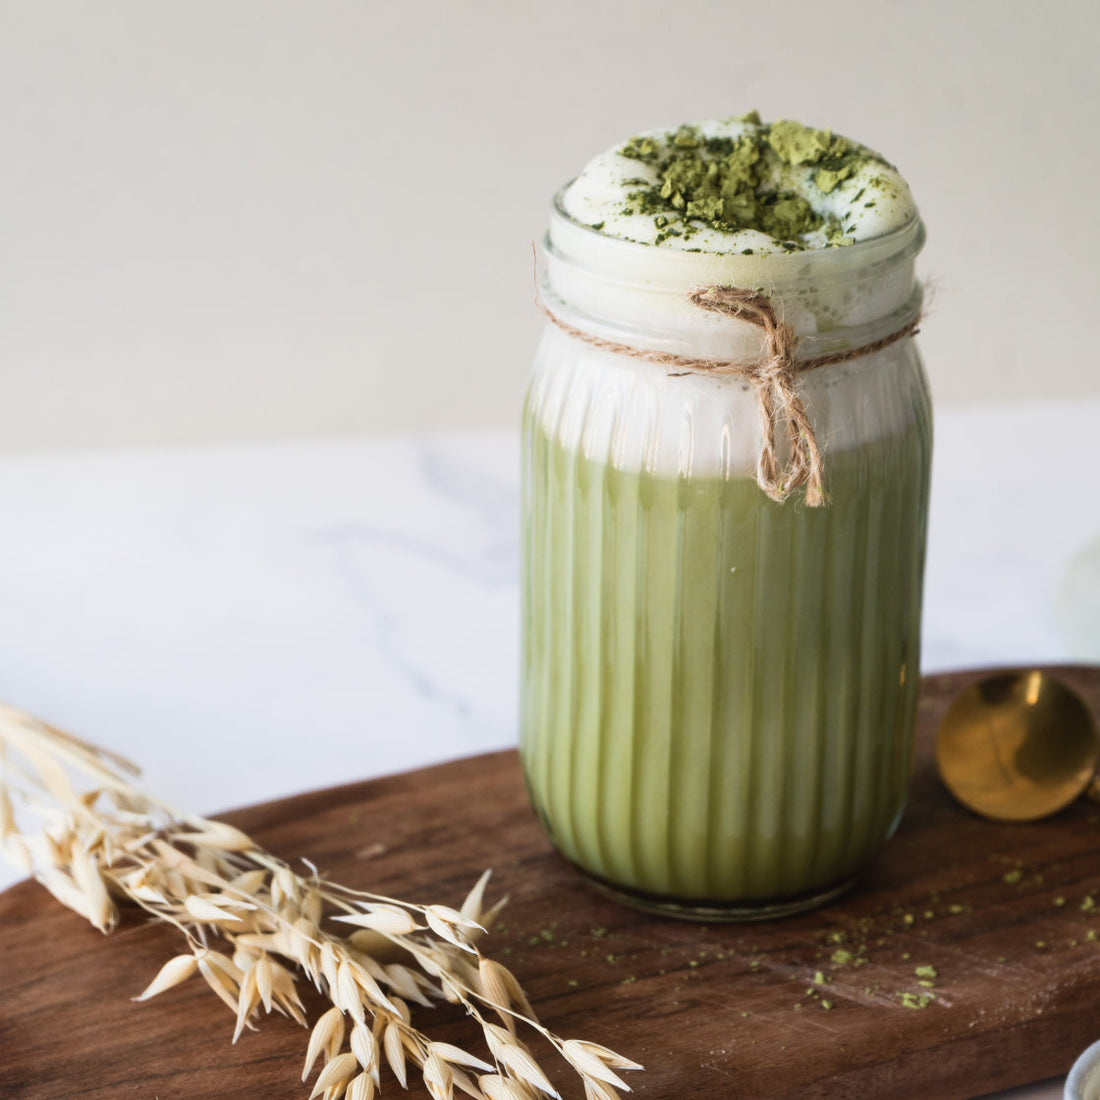 Leckeres grünes Matcha Getränk, zubereitet mit dem Bio Hafer Drink